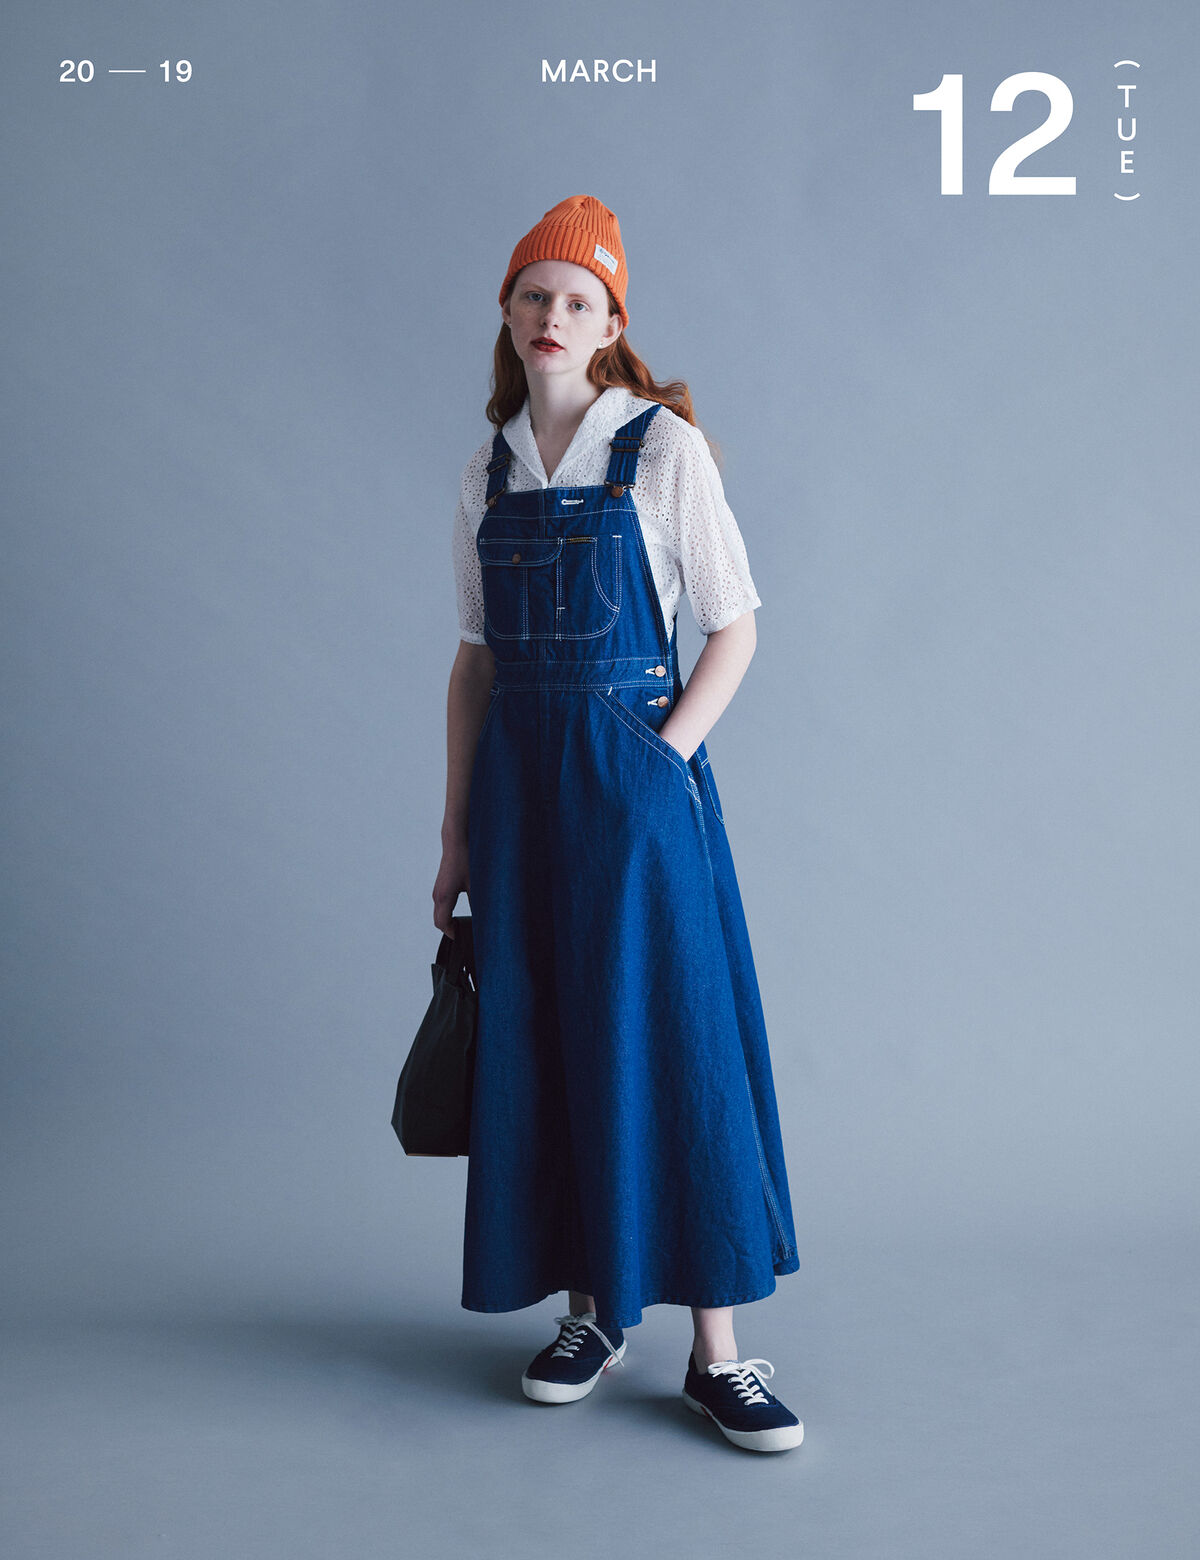 デニム”ガールの着まわし31days「ジャンパースカートが提案するデニムの新解釈」 | 着まわし7days | ファッション | FUDGE.jp